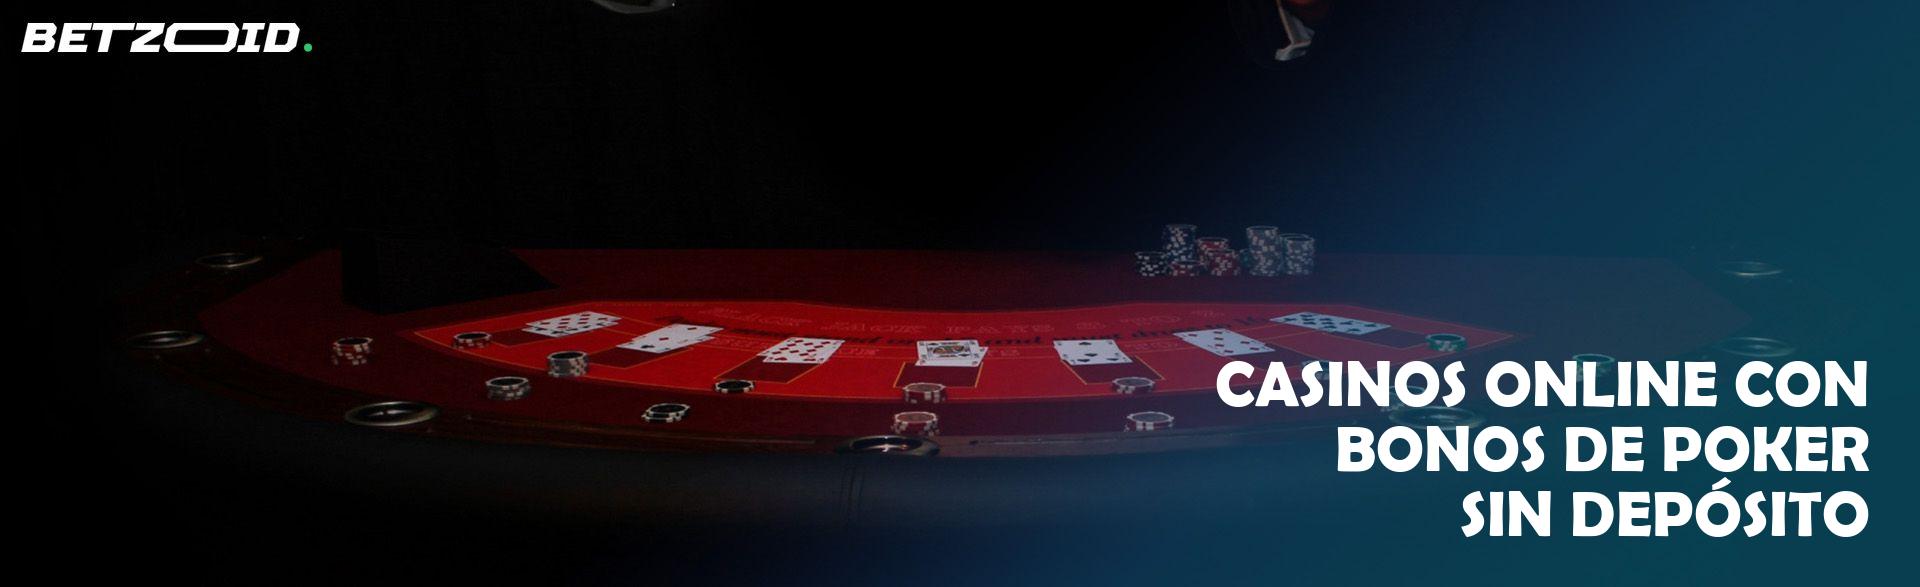 Casinos Online con Bonos de Poker sin Depósito.